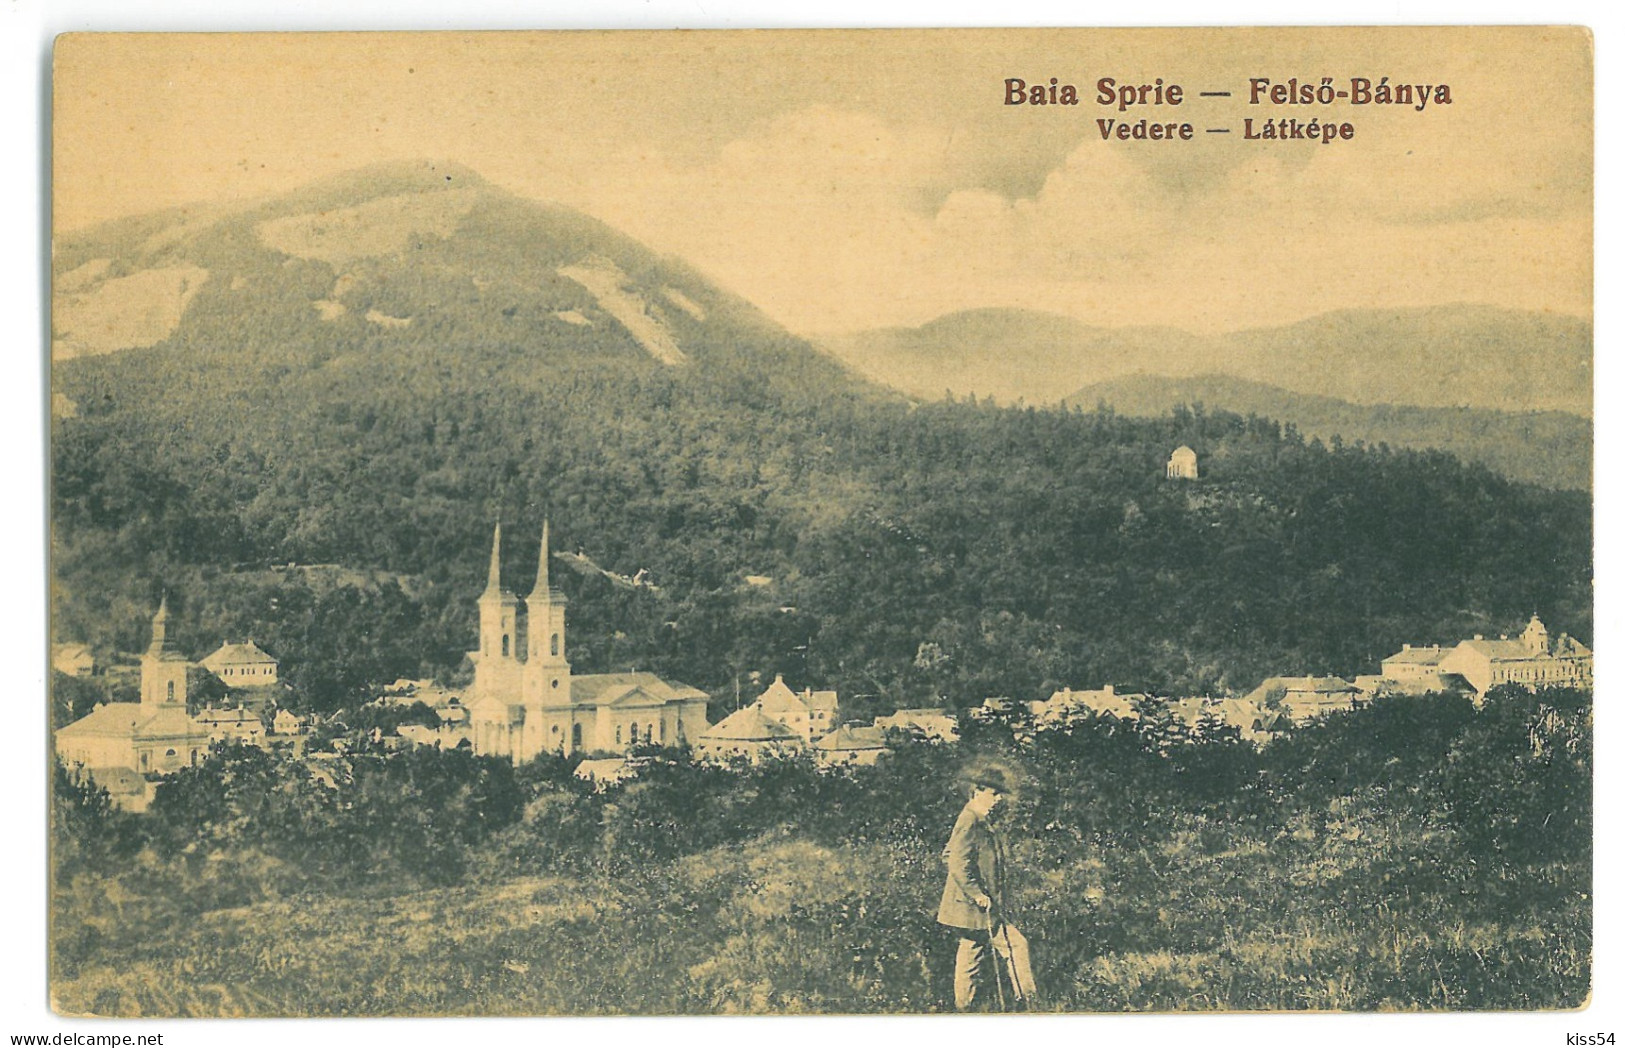 RO 45 - 24314 BAIA SPRIE, Maramures, Panorama, Romania - Old Postcard - Unused - Roemenië